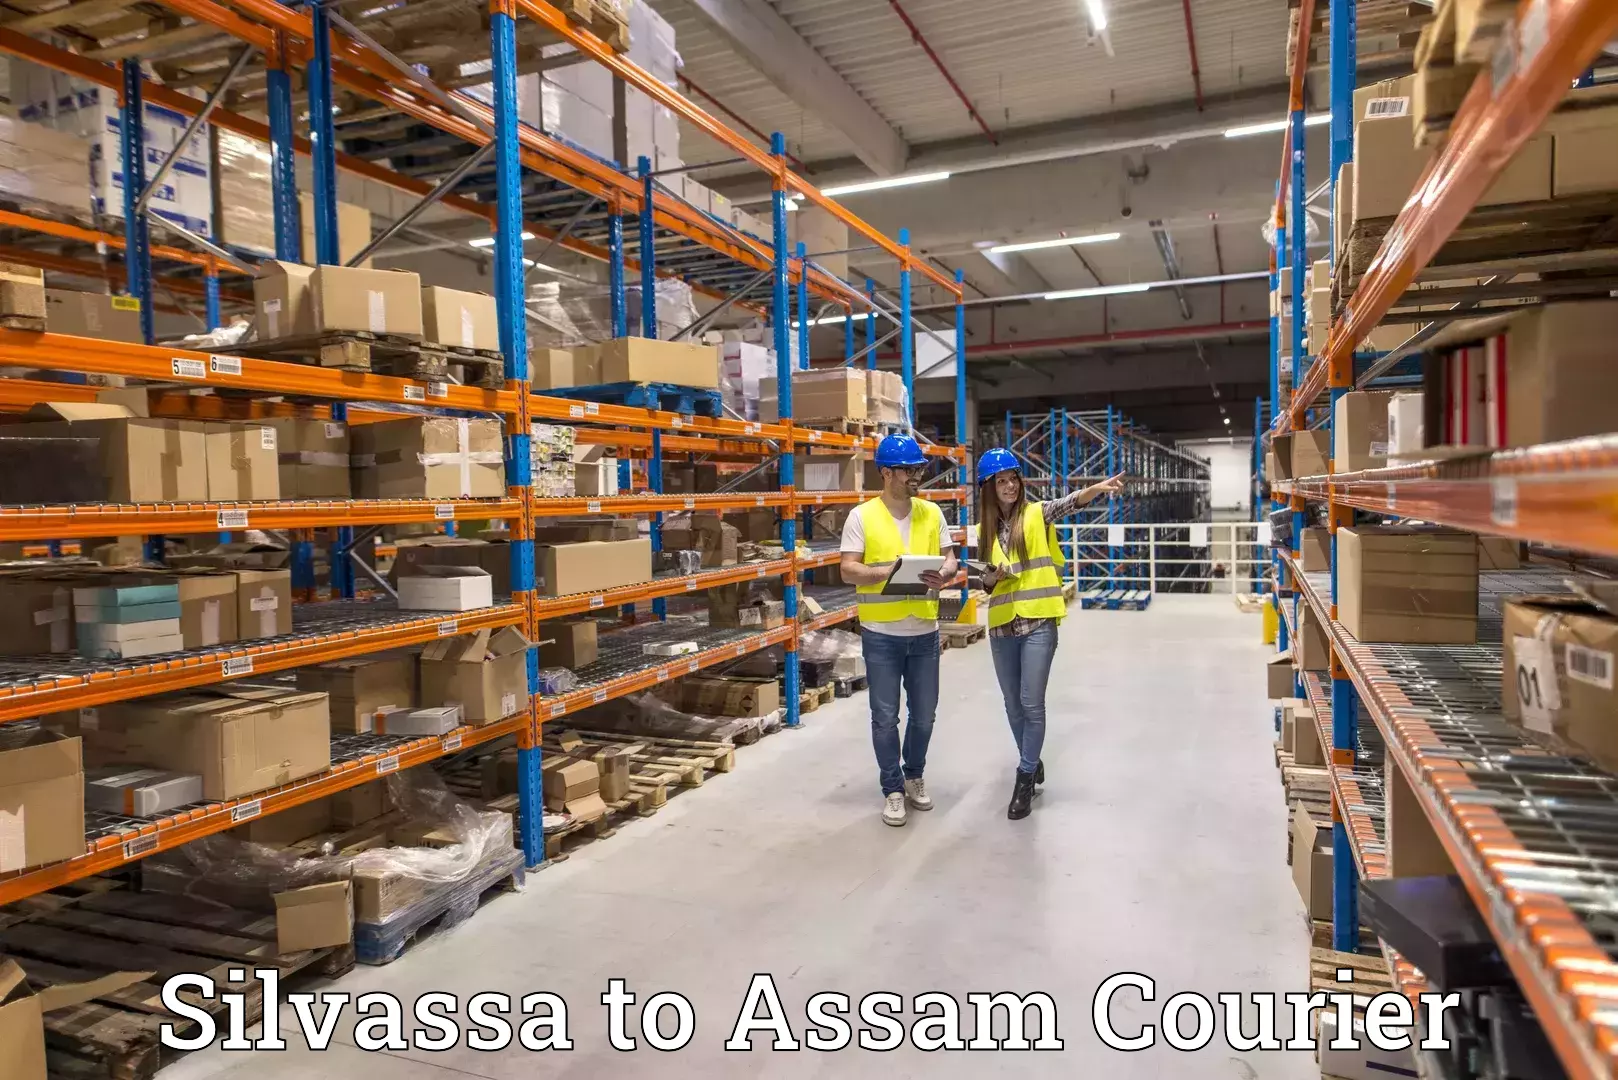 Express mail service Silvassa to Assam